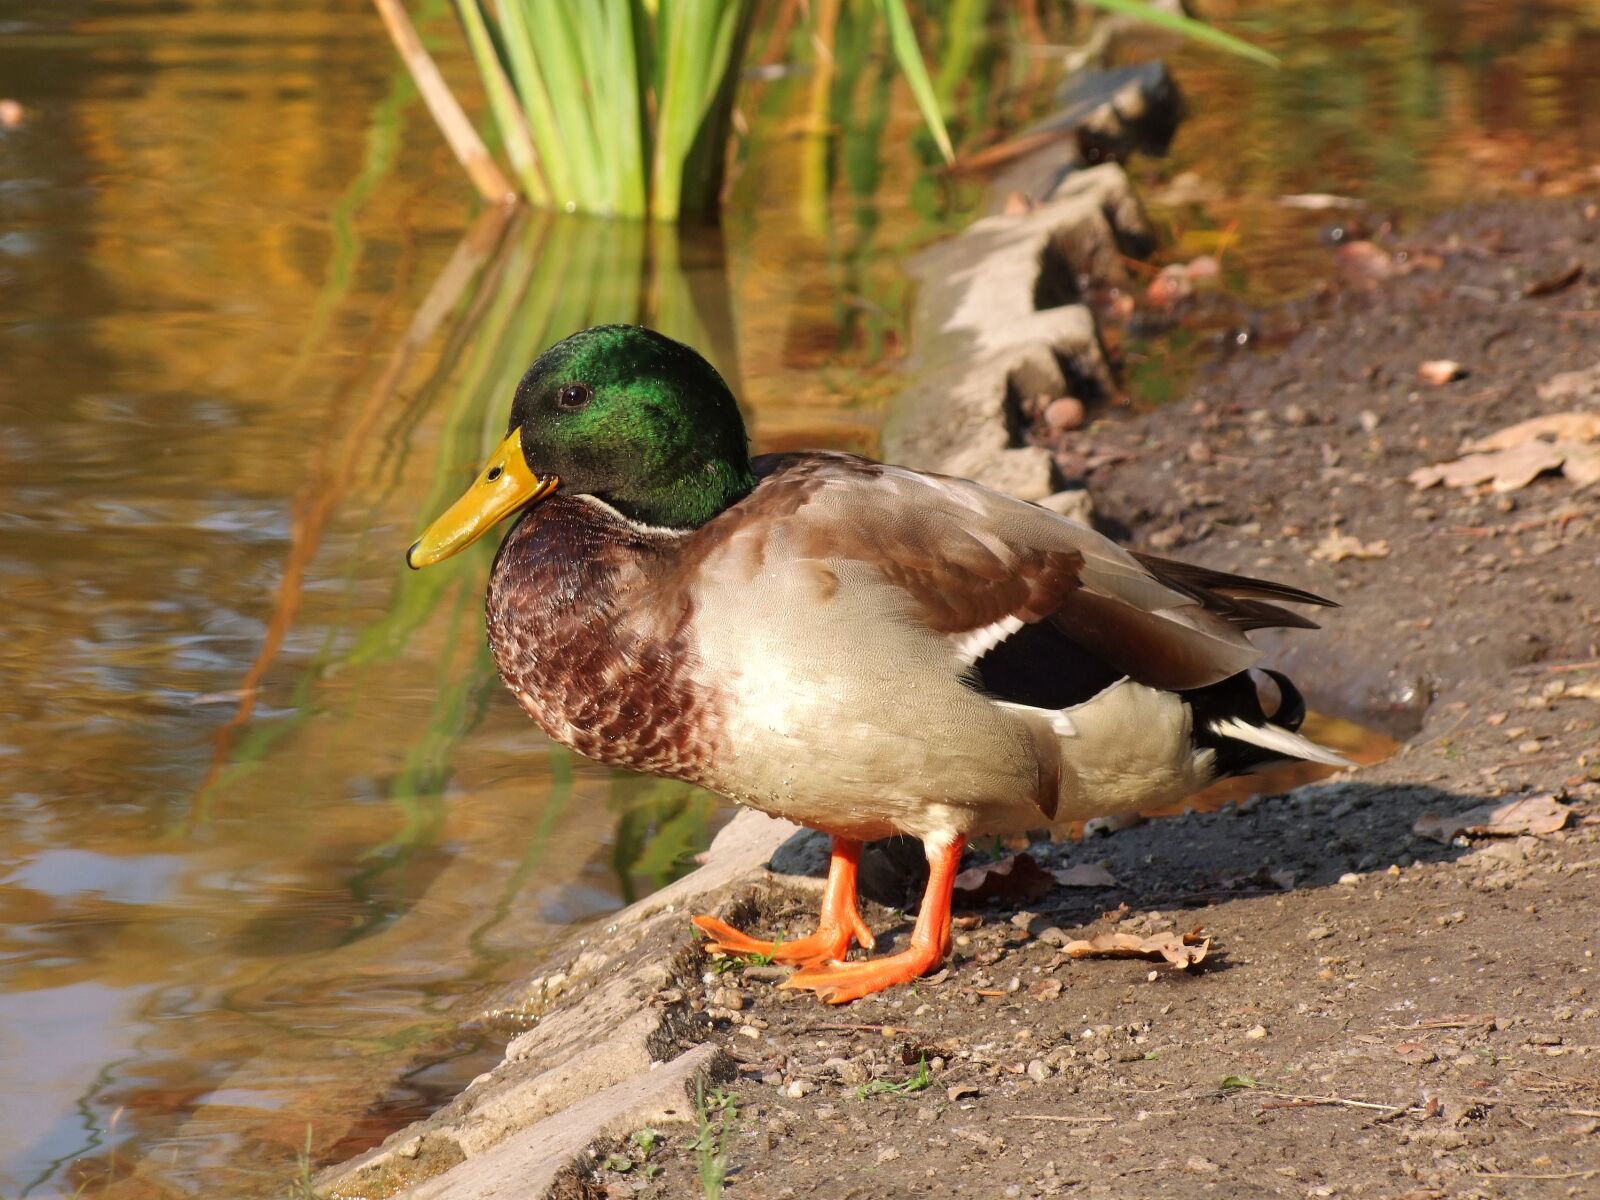 Fujifilm FinePix S100fs sample photo. Wild ducks, lakeside, color photography